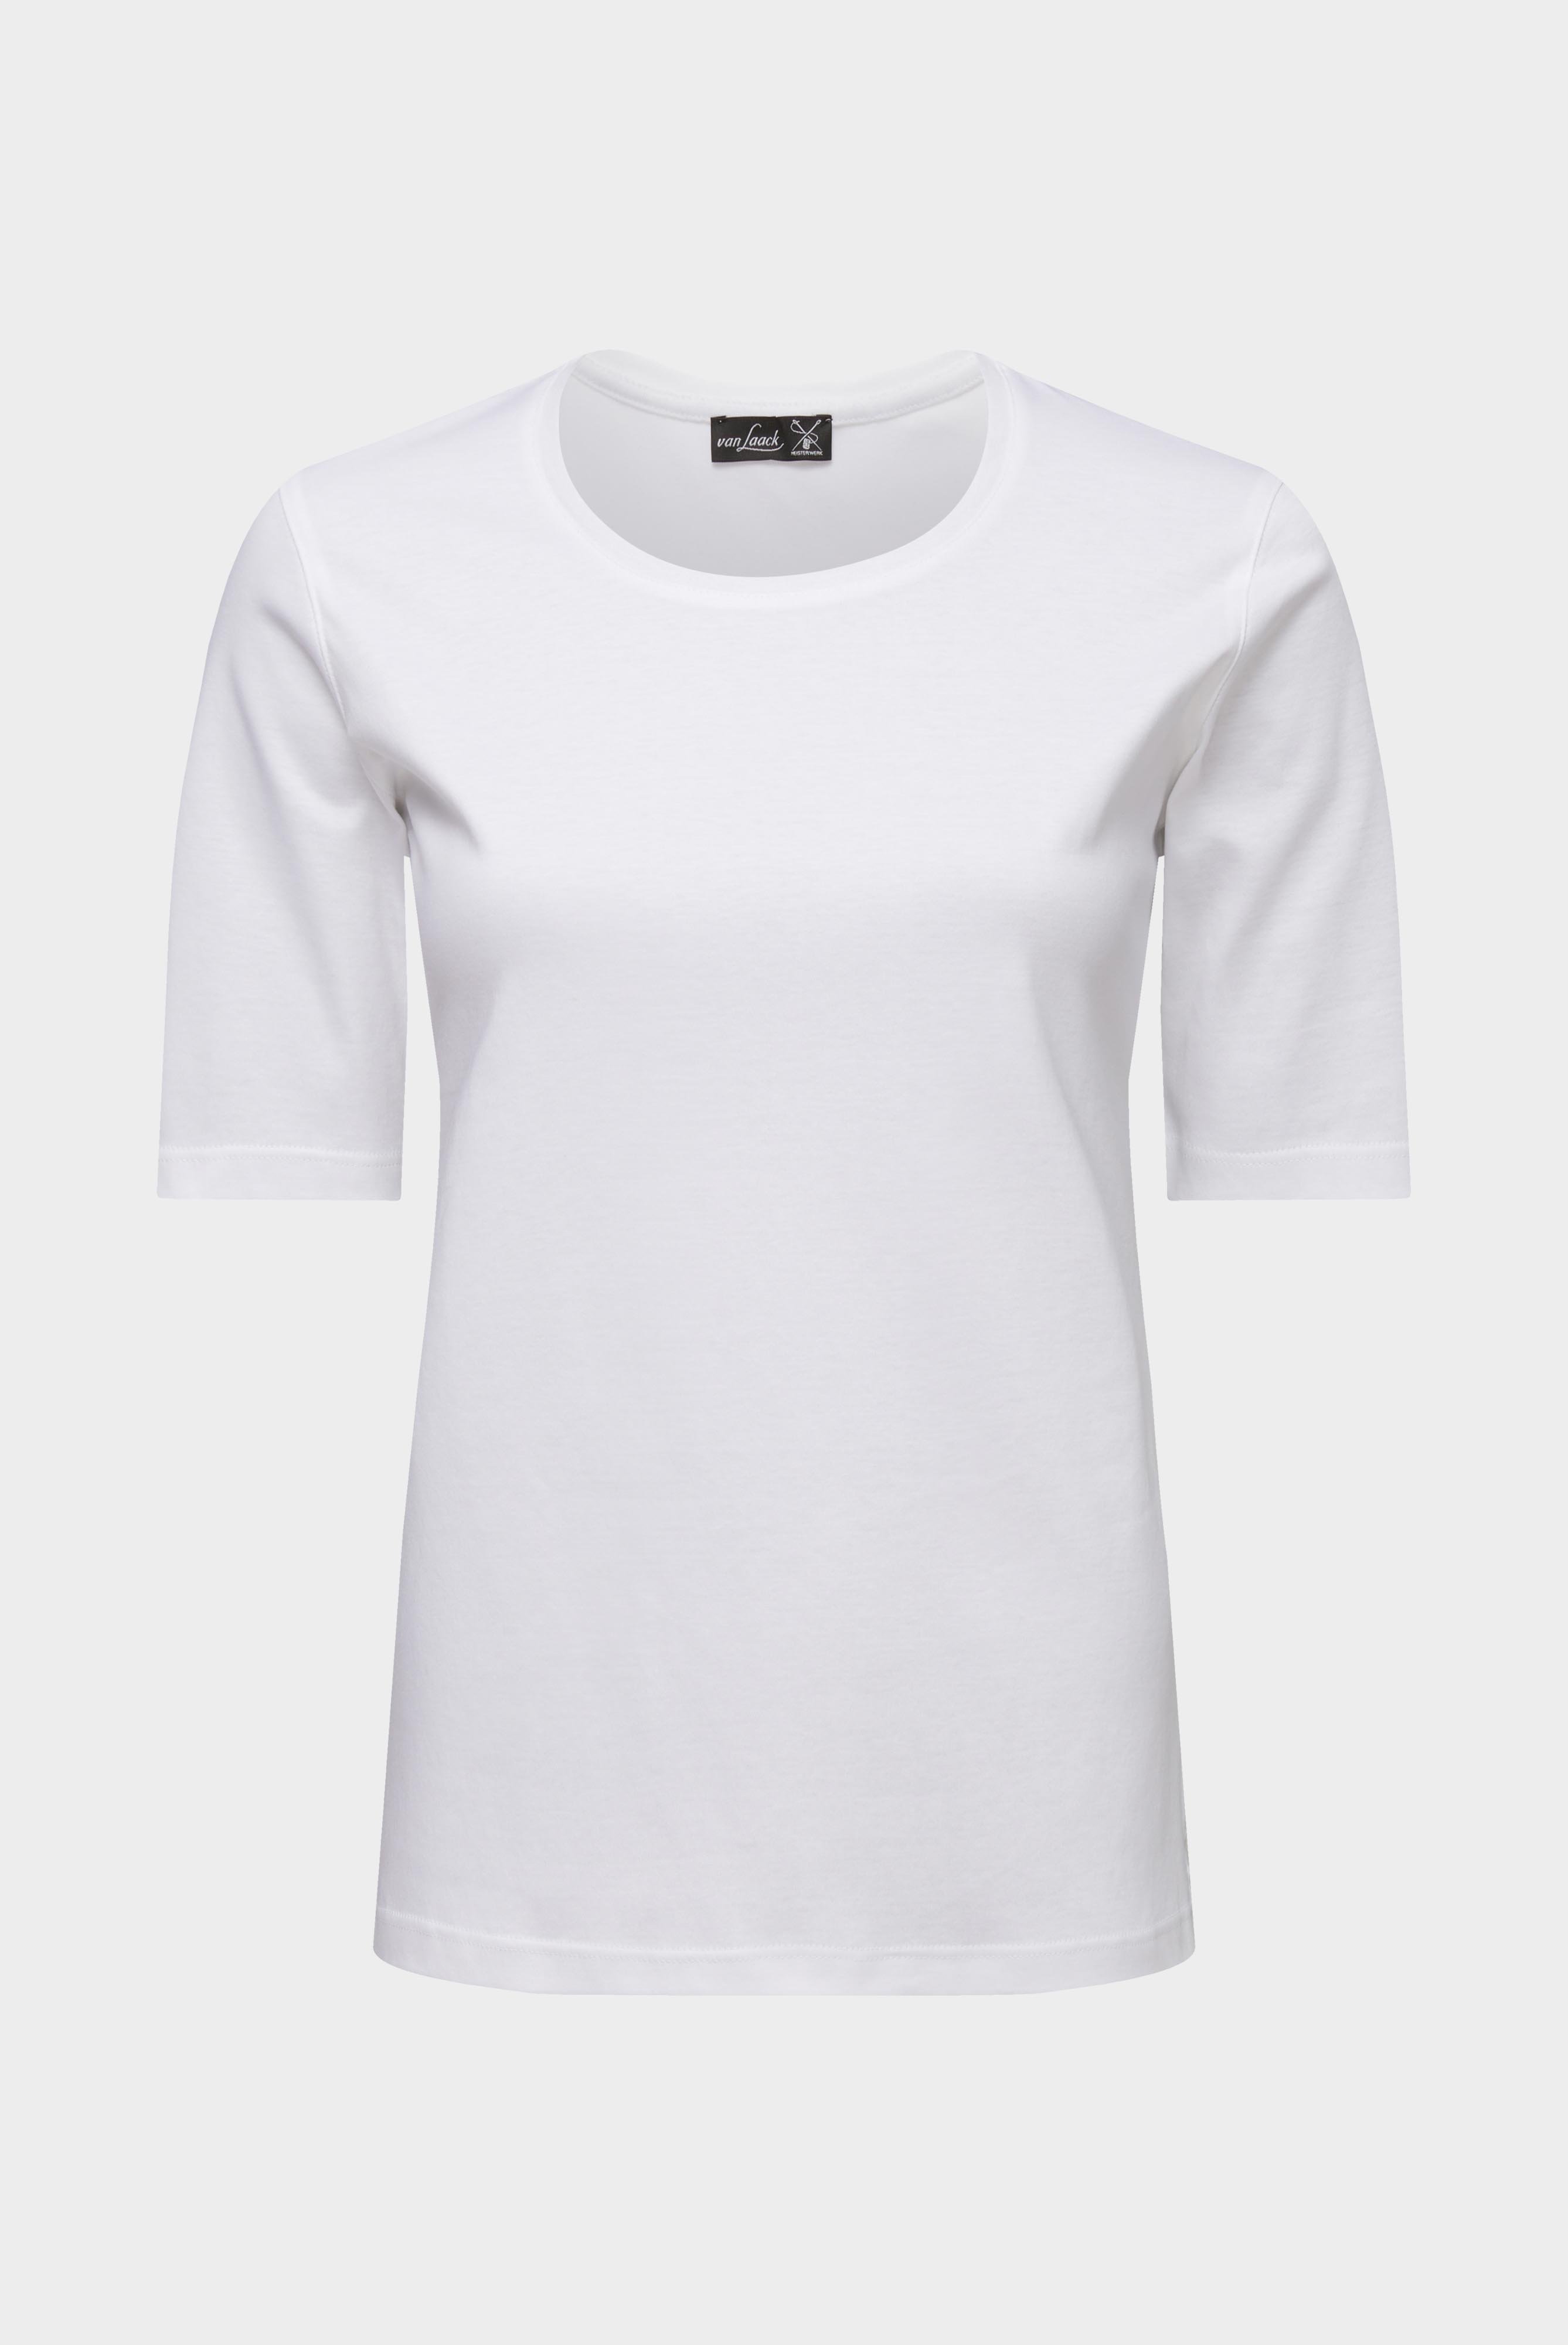 Tops & T-Shirts+Jersey T-Shirt+05.6386.18.180031.000.48